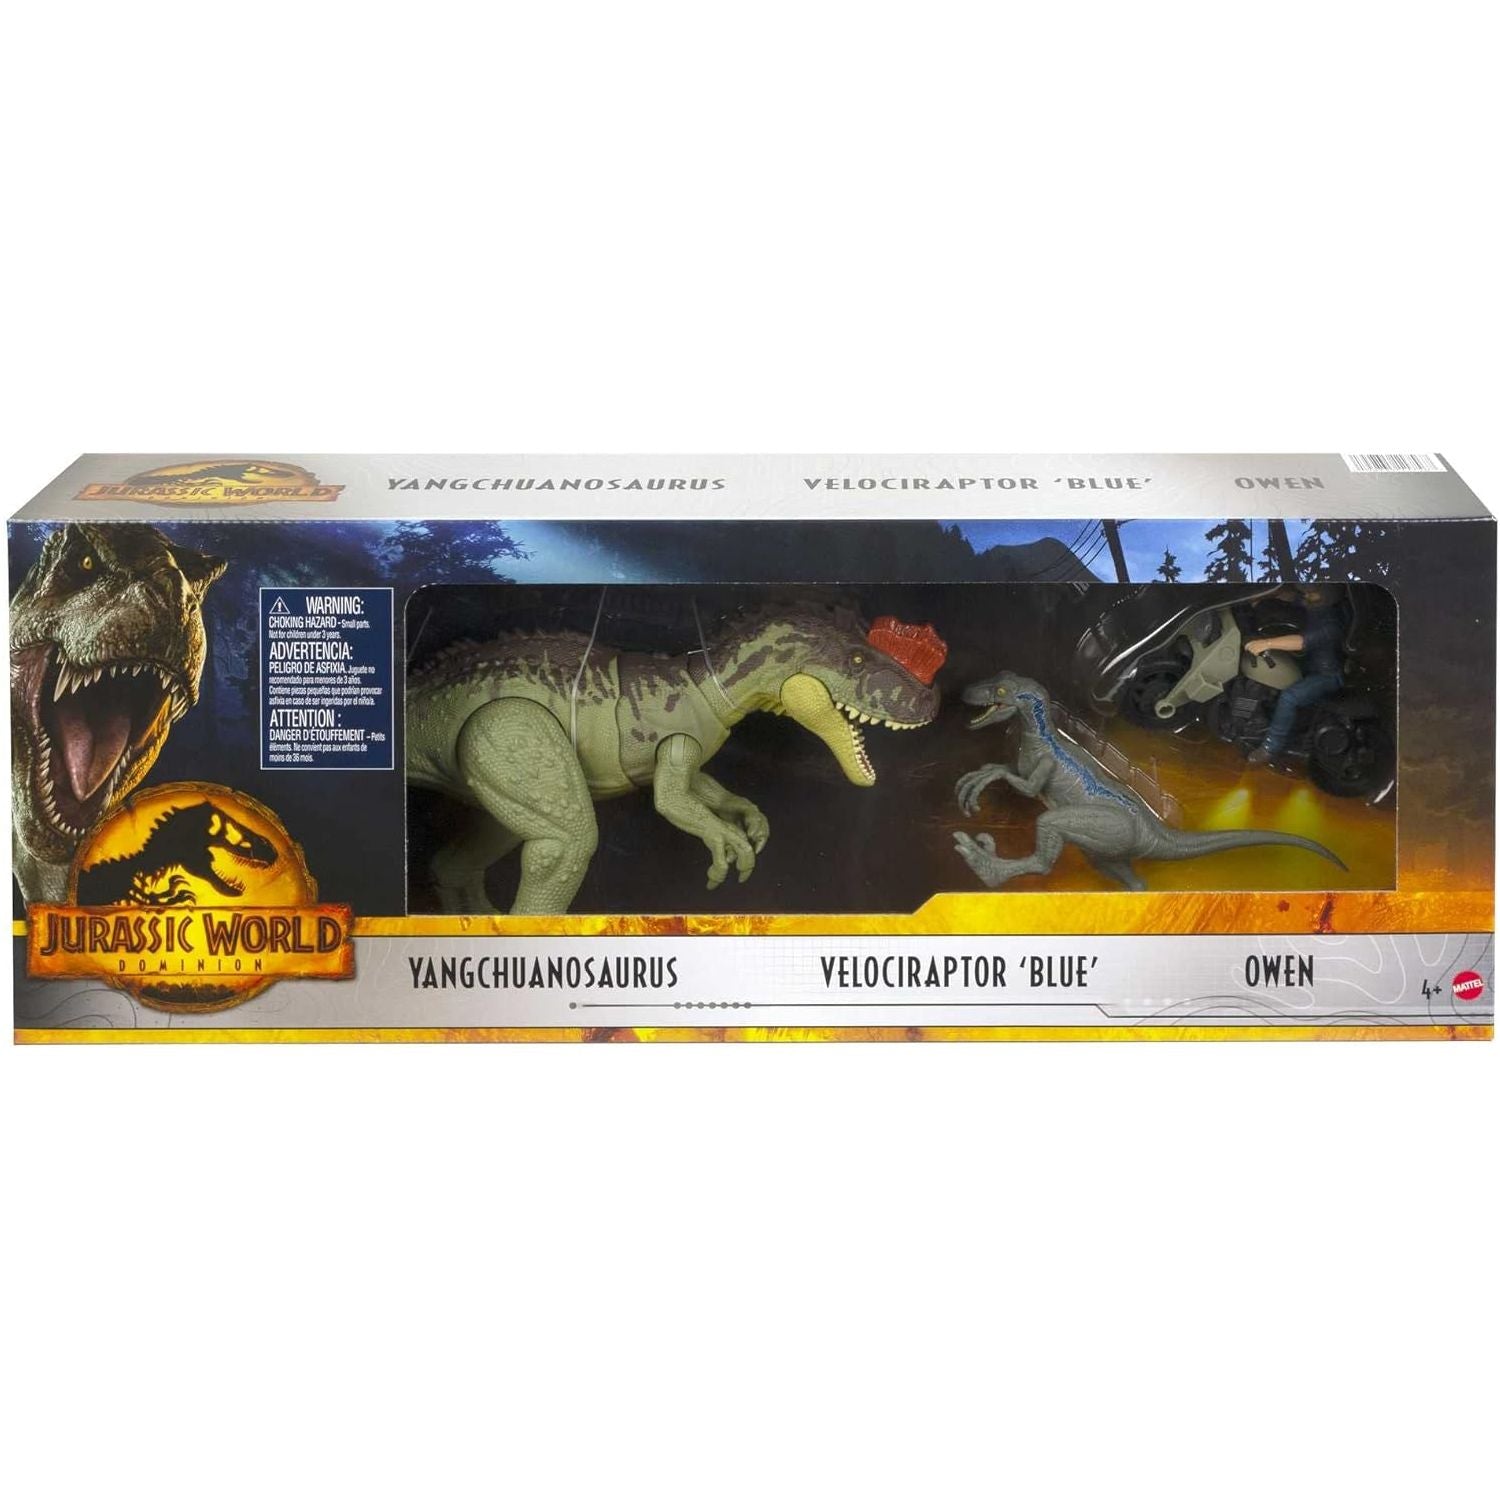 Mattel - Jurassic World - HLP79 - Set Yangchuanosaurus - Velociraptor Blue - Owen